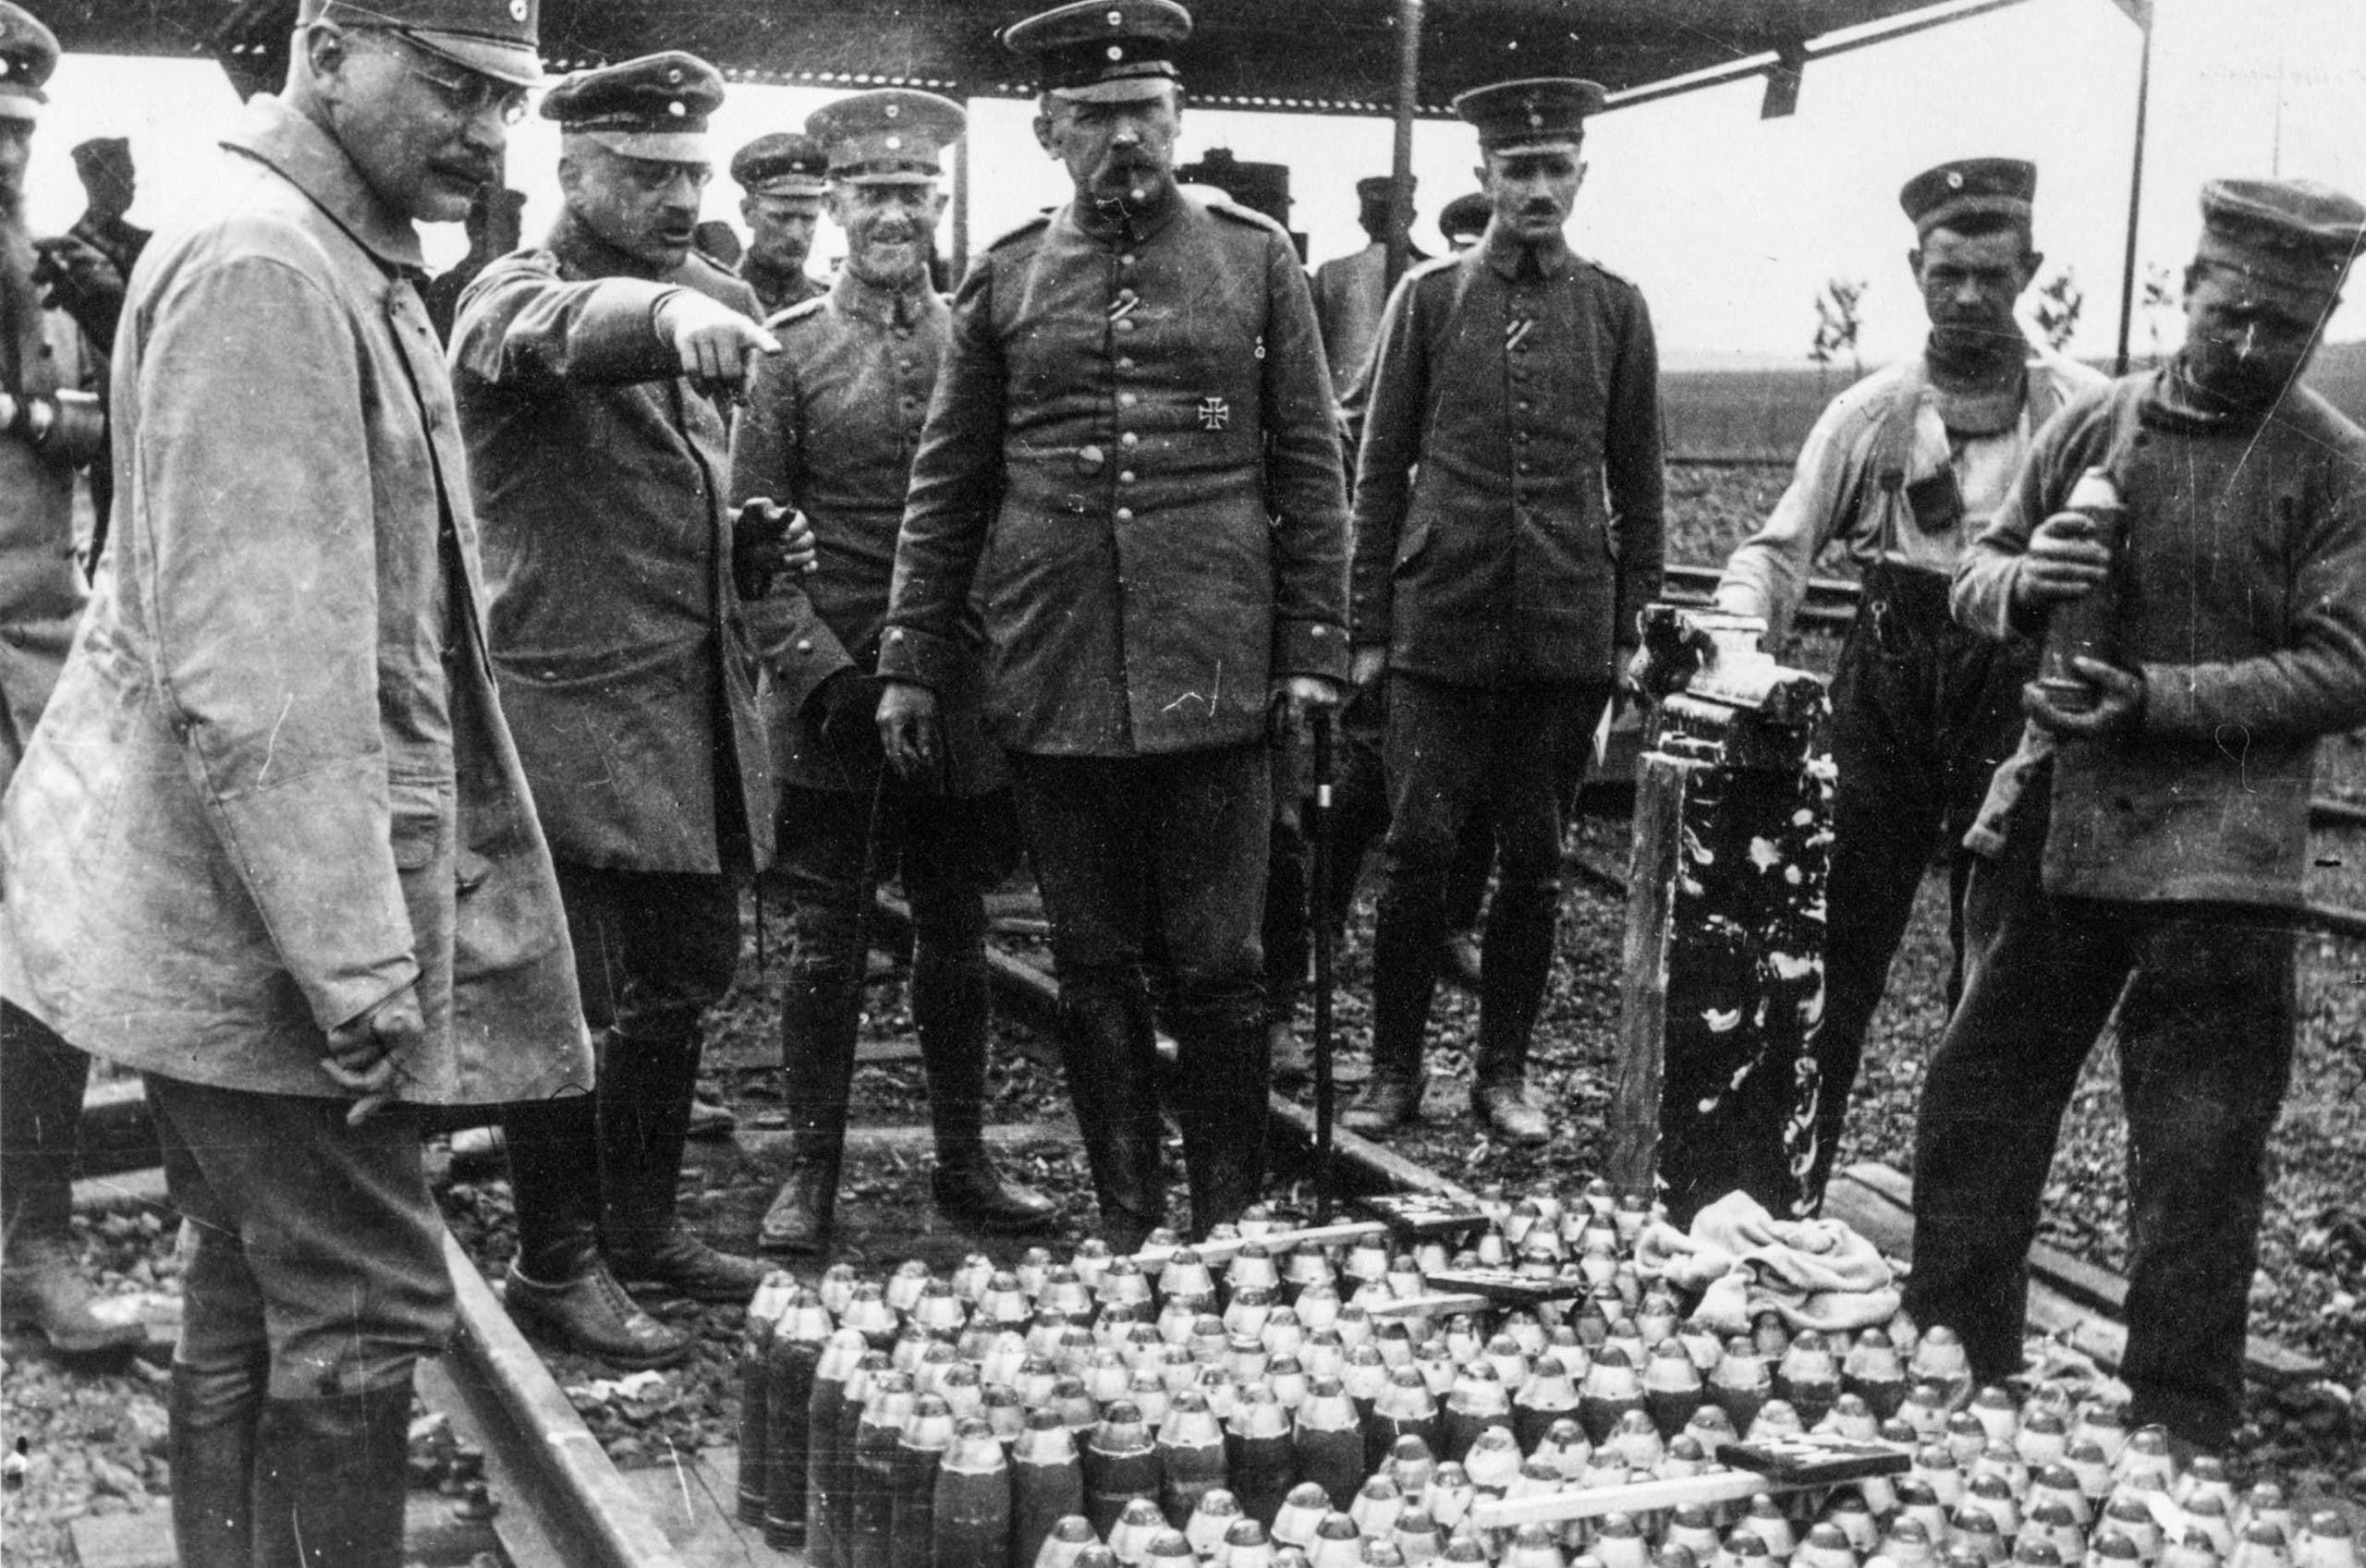 صورة لعملية تفقد عدد من الجنرالات الألمان لقذائف مجهزة بعناصر كيماوية خلال الحرب الكبرى